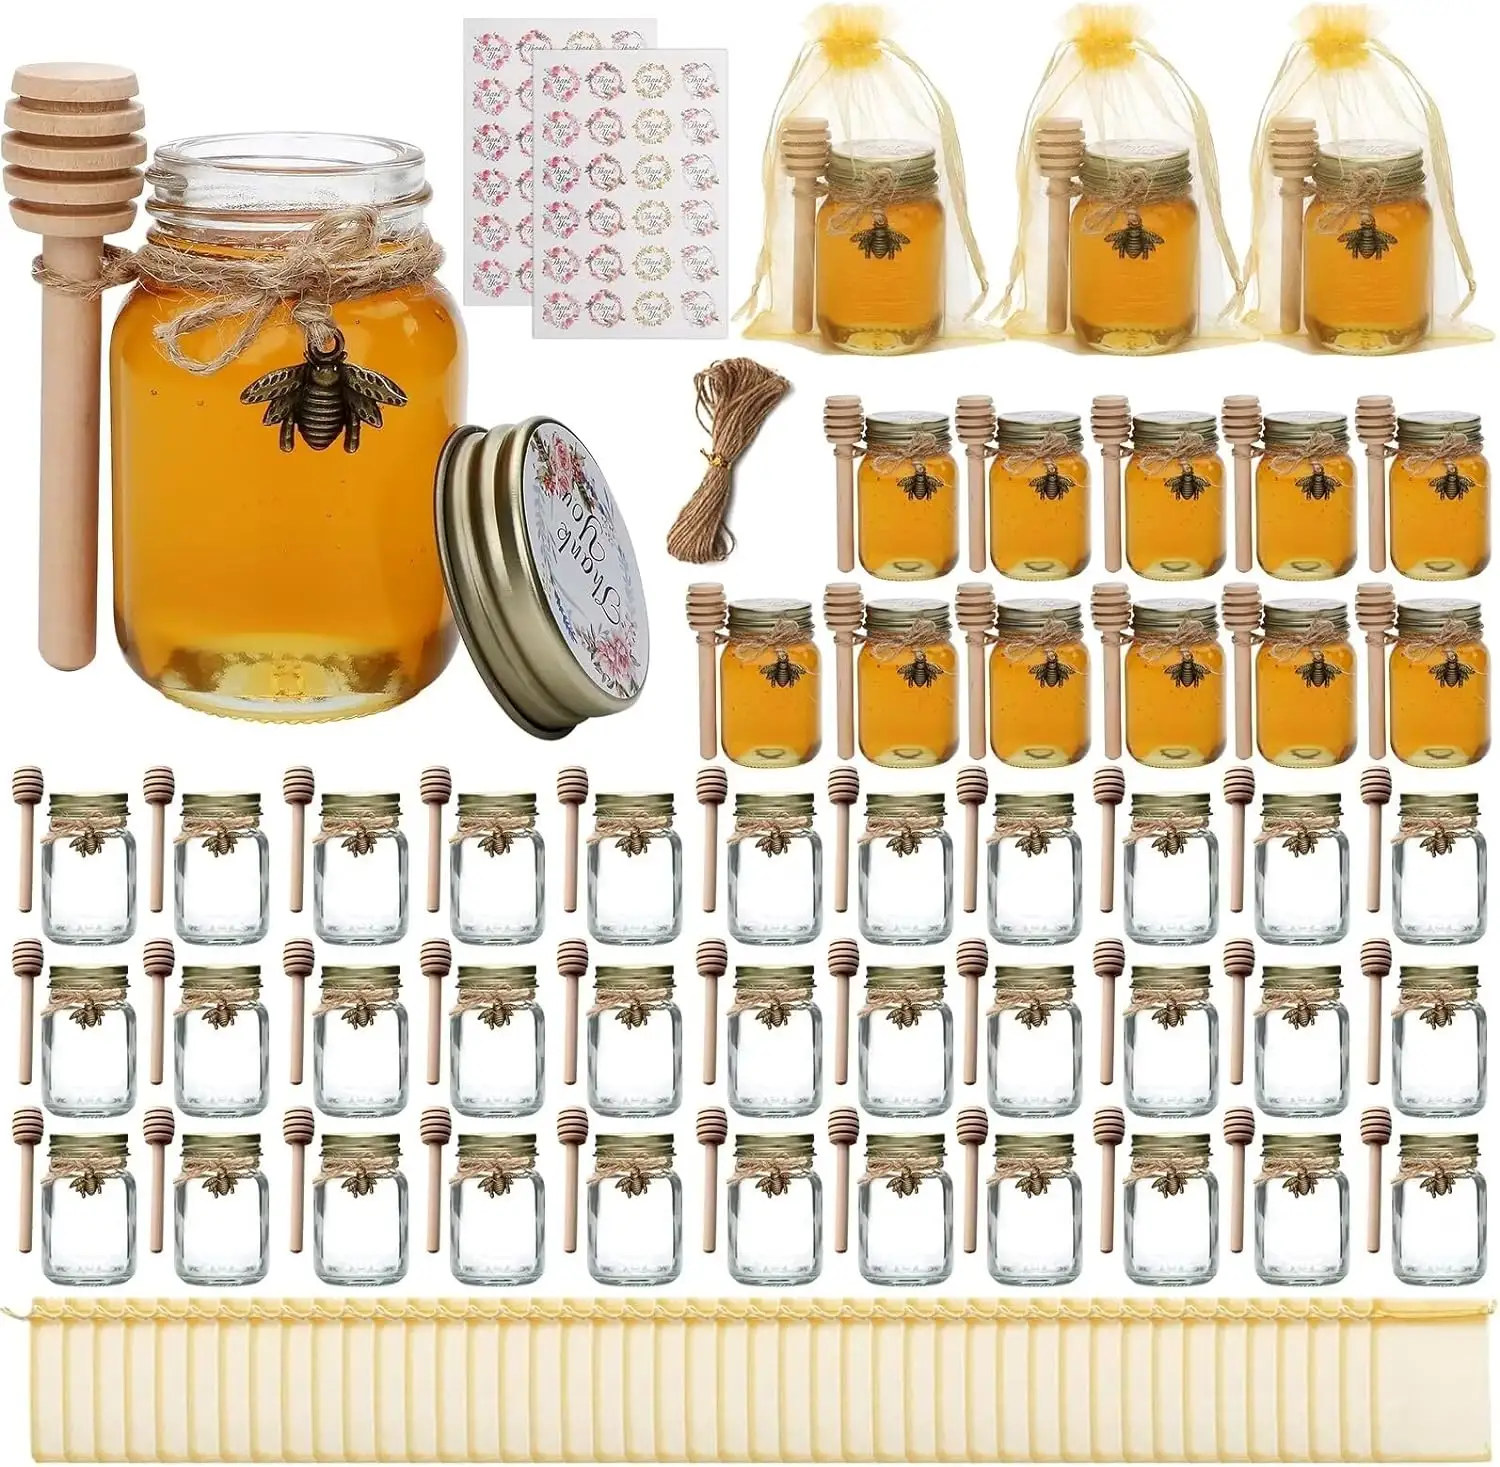 Mini potes de mel redondos vazios de 2 onças com abelha de madeira e presentes de agradecimento